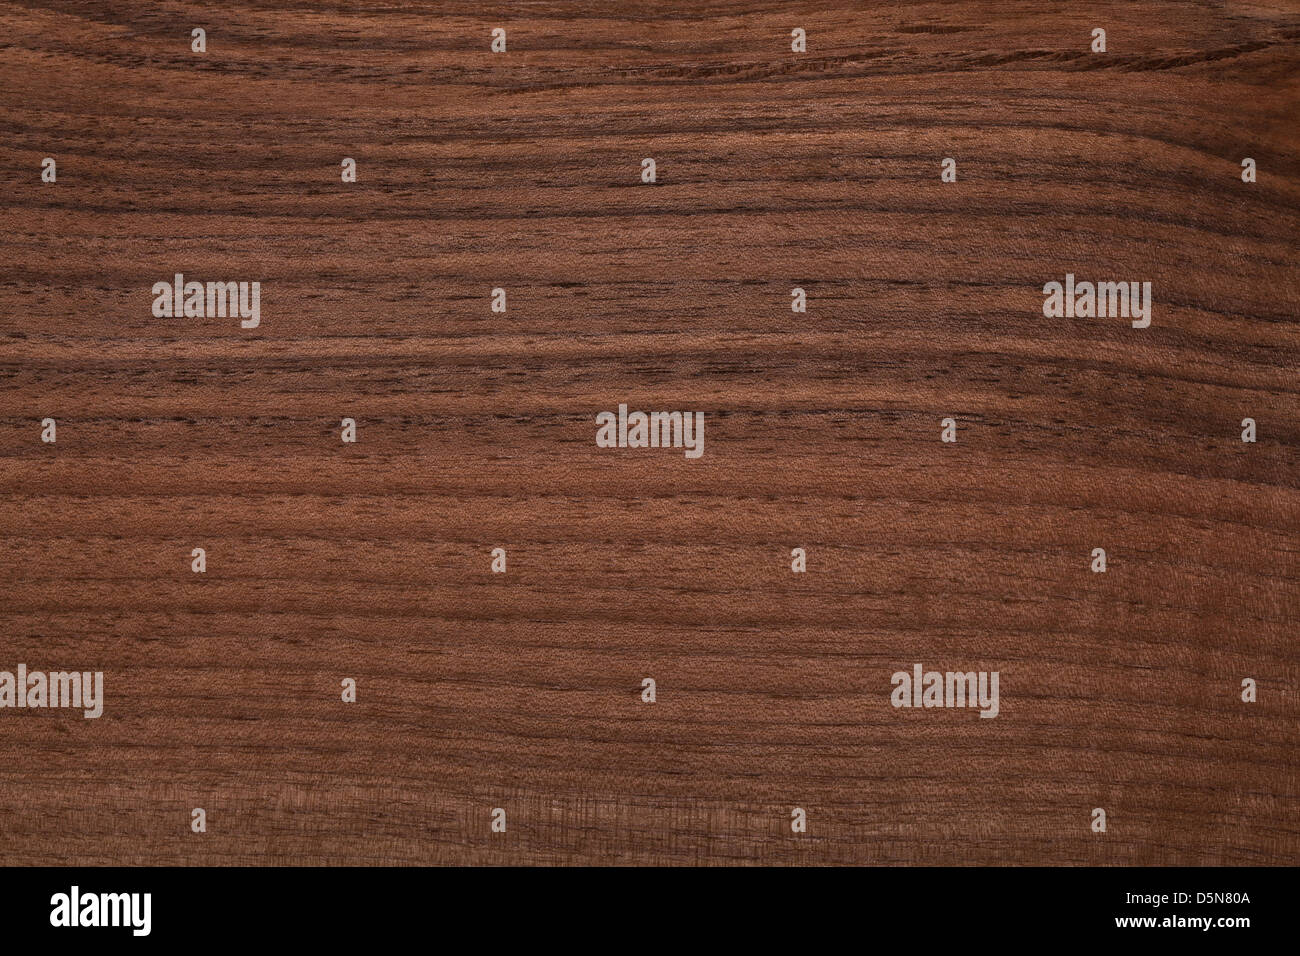 closeup image of natural wood texture Stock Photo - Alamy